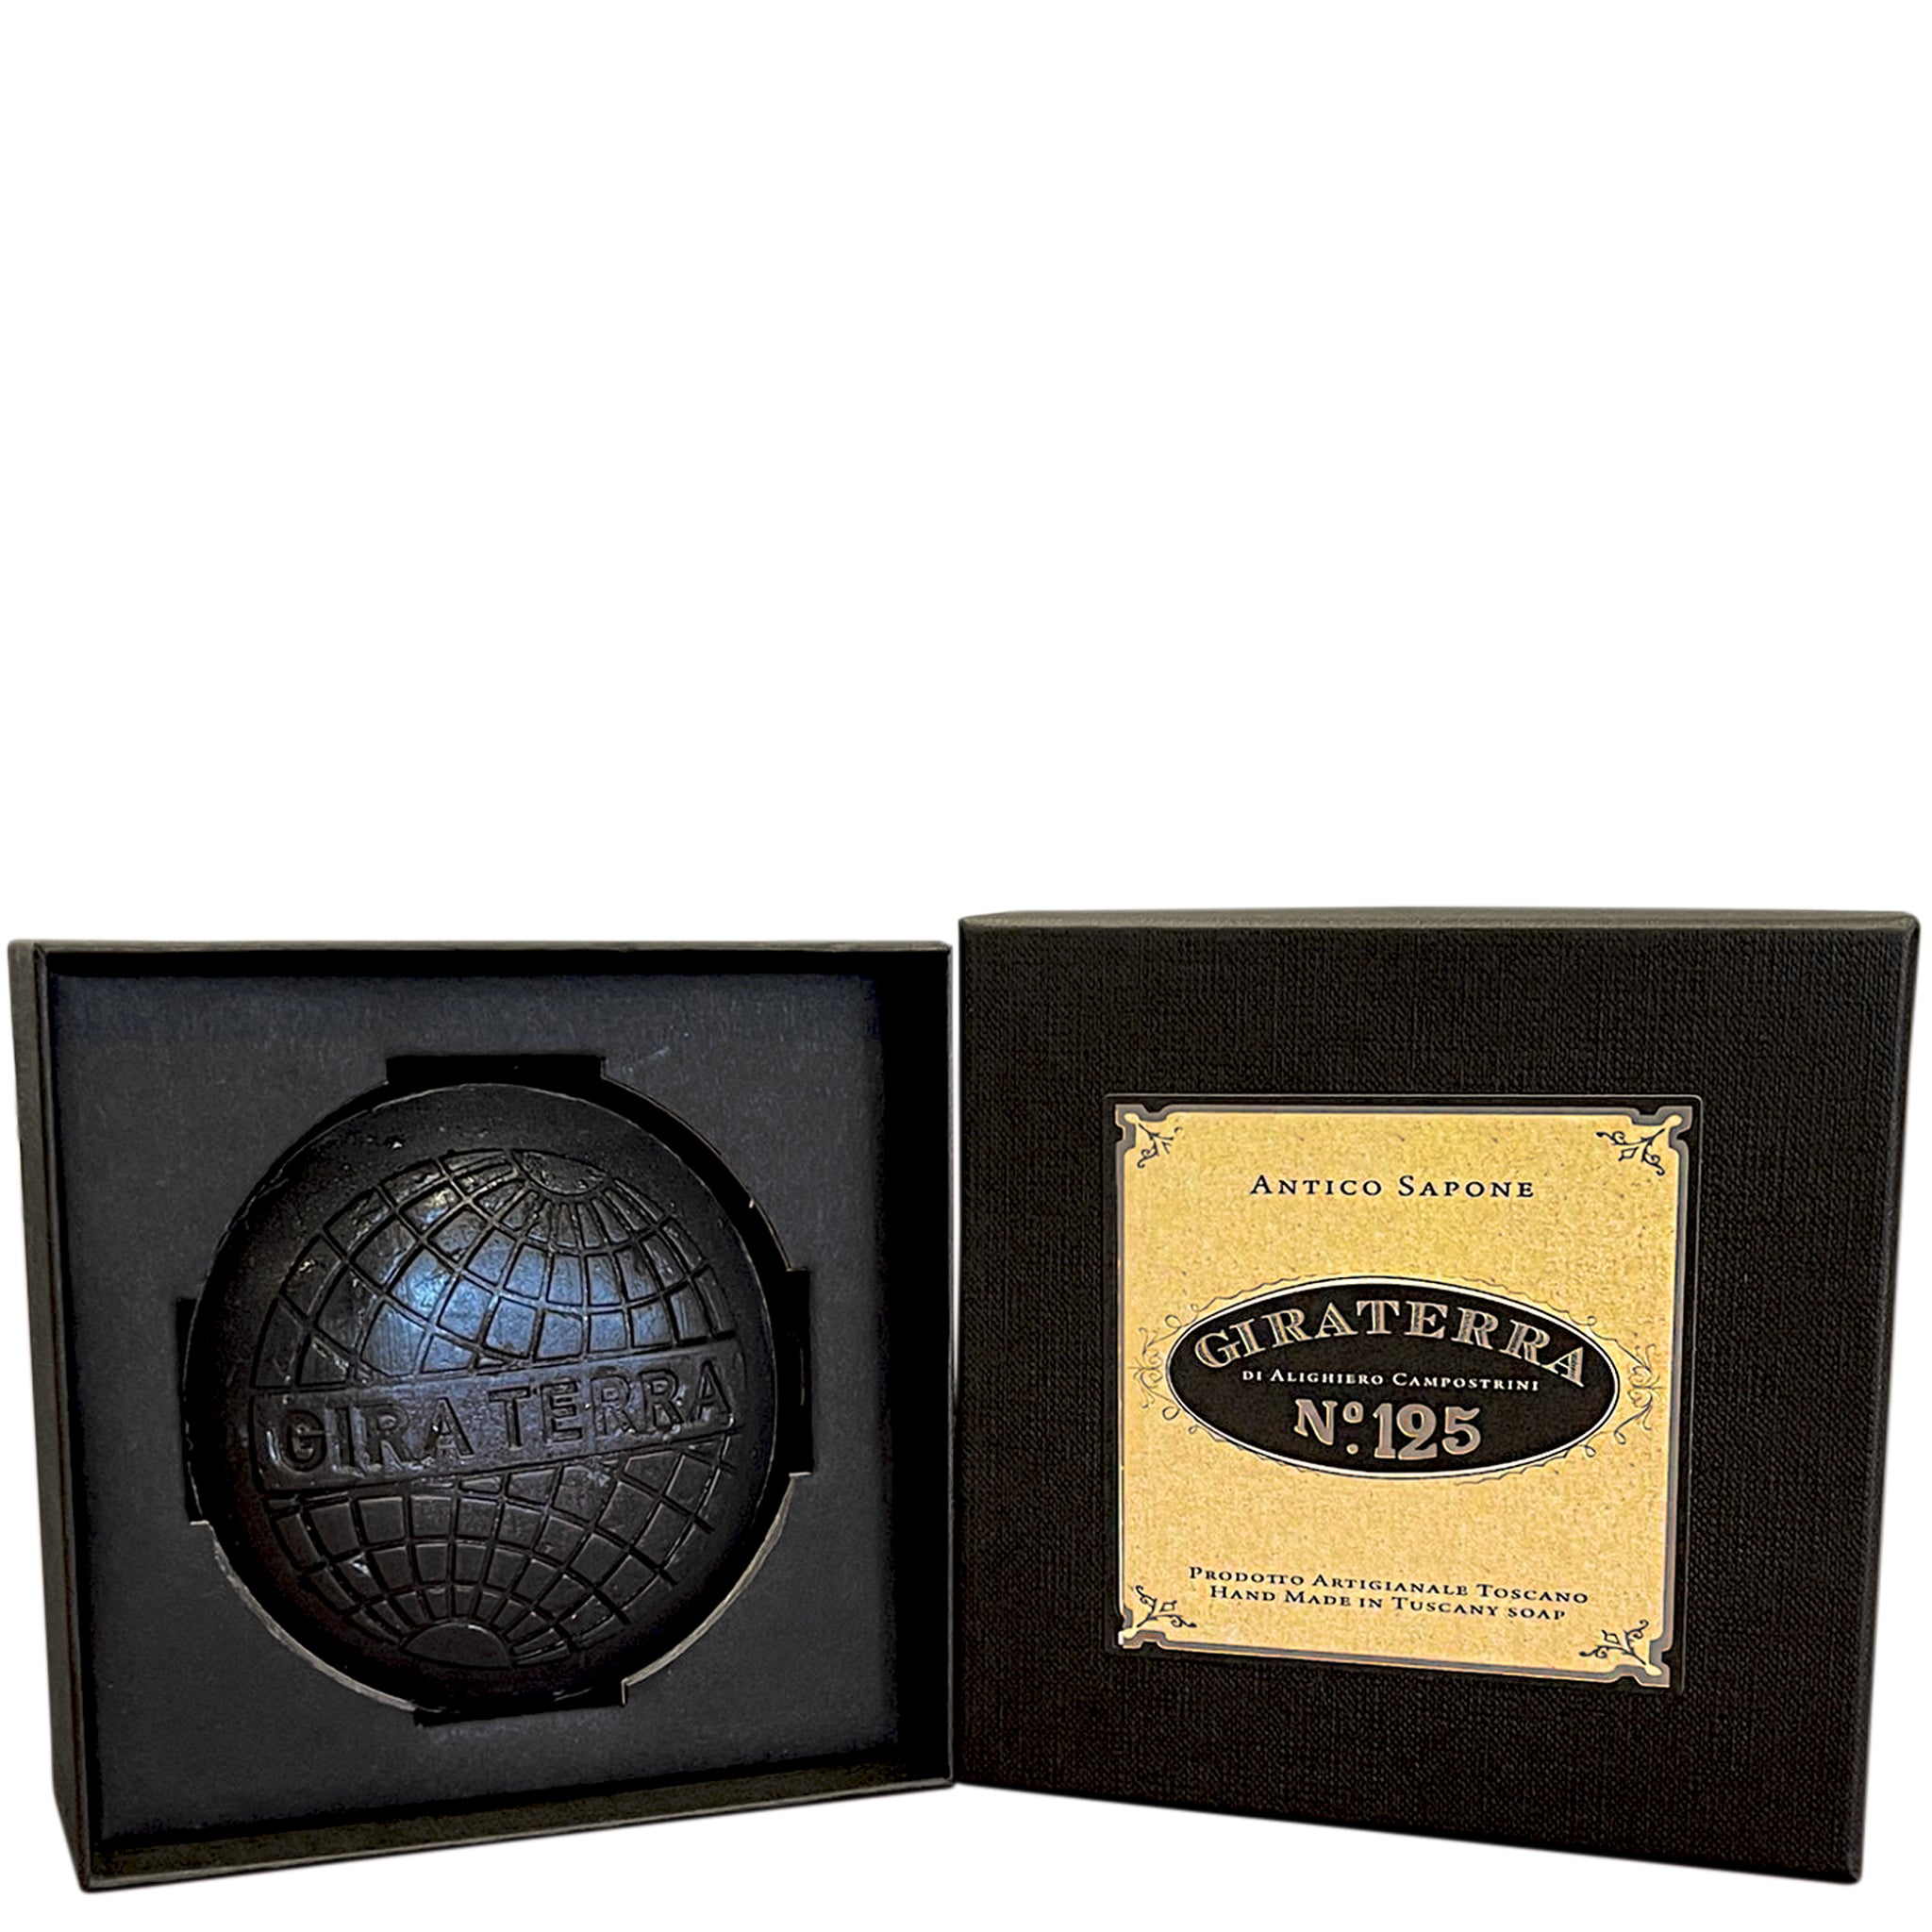 Giraterra Black Luxury Handmade Soap Gift Boxed 220g